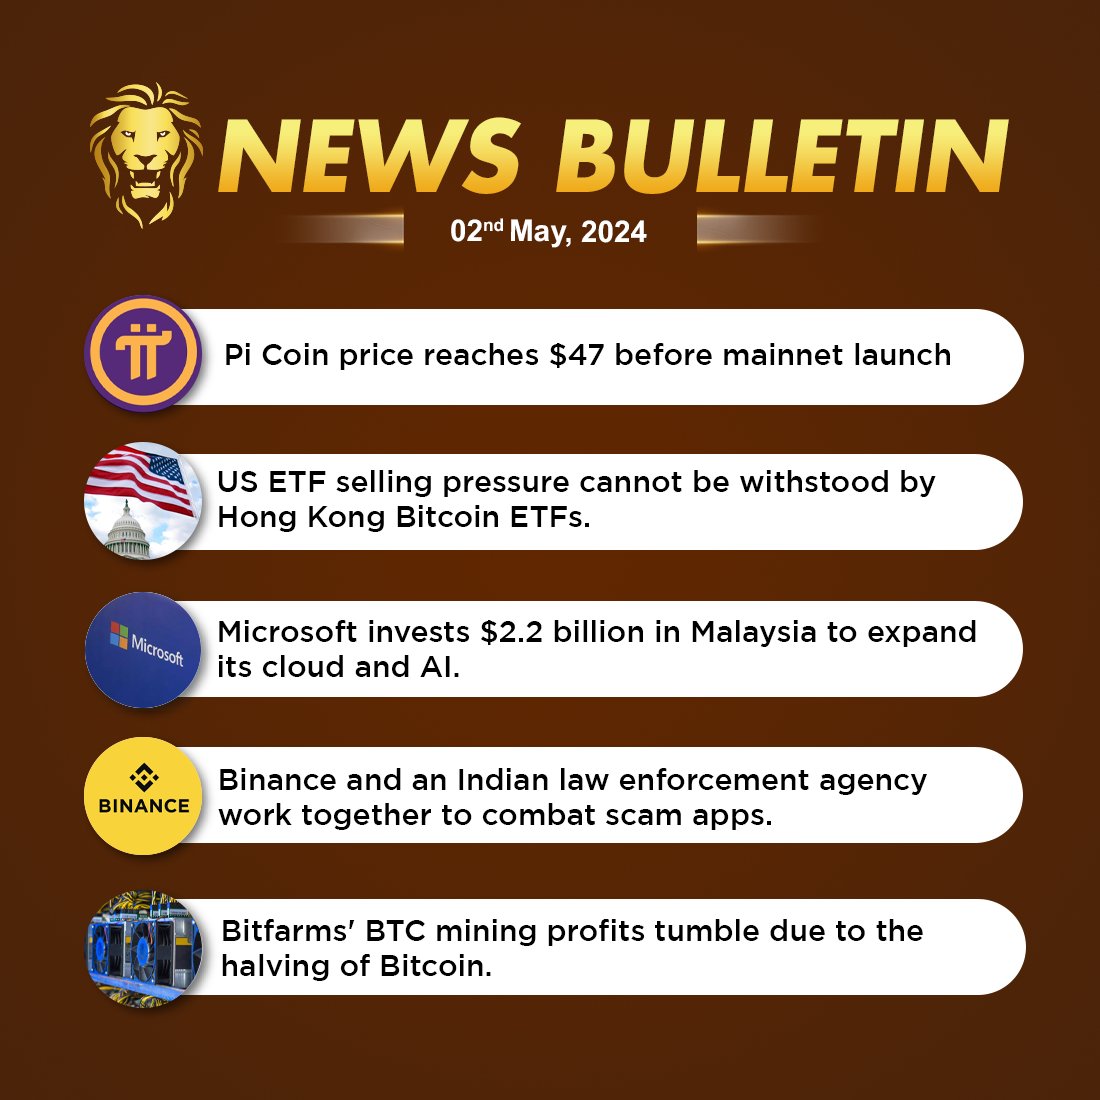 #CoinGabbar Latest News Bulletin: May 2nd, 2024

Read More News: coingabbar.com/en/crypto-news…

#CryptoNews #PiCoin #mainnetlaunch #ETF #HongKong #BitcoinETFs #AI #Binance #Bitfarms #BitcoinMining #bitcoinhalving #cryptonewstoday